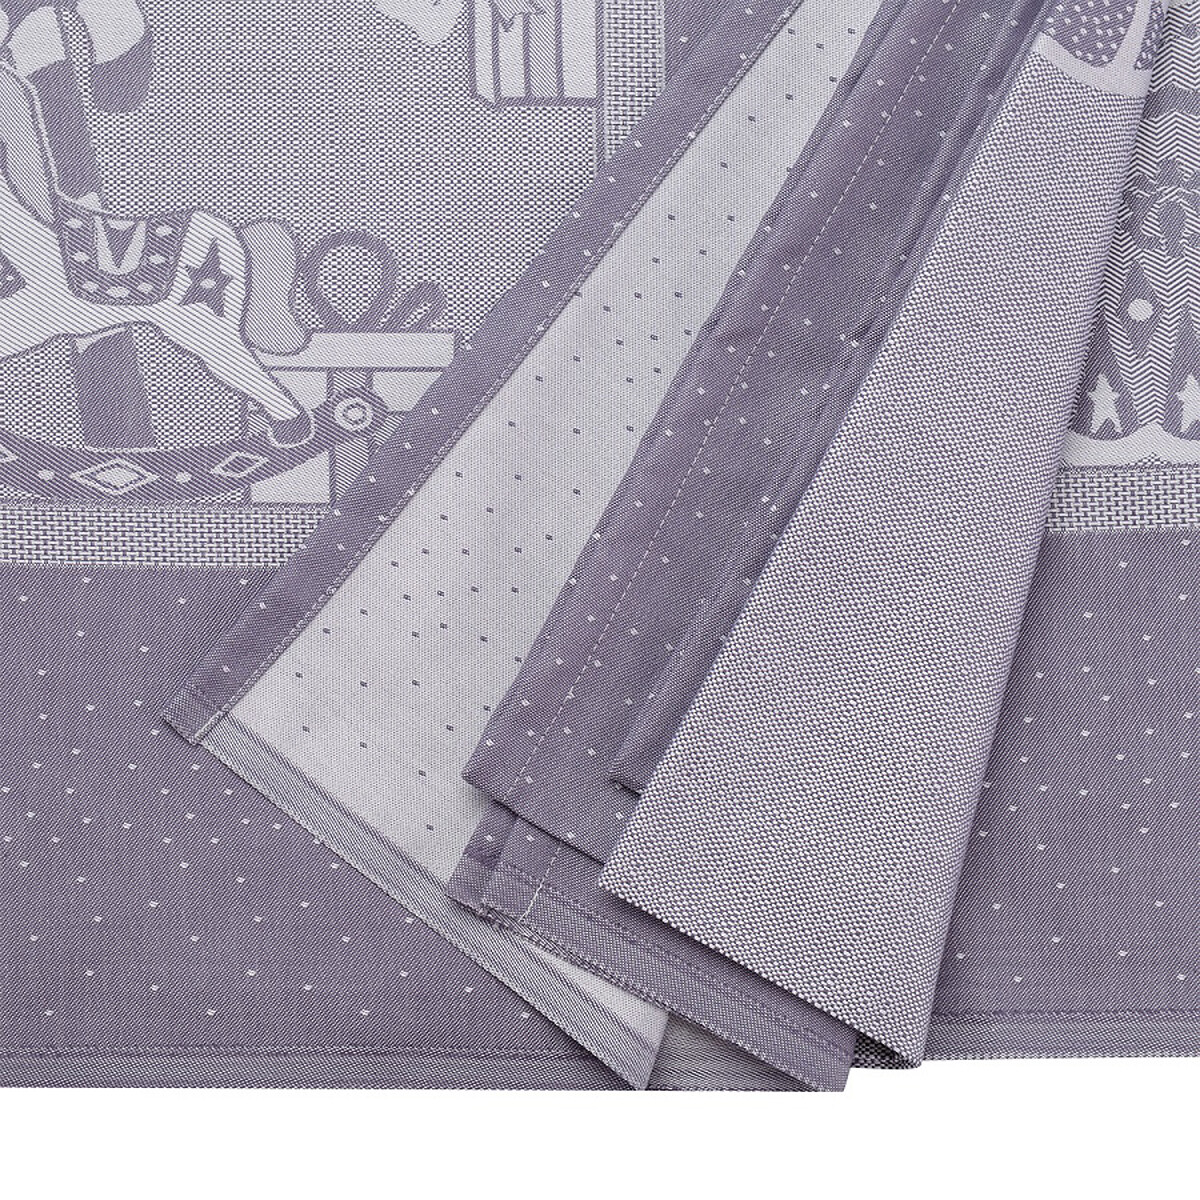 Скатерть из хлопка фиолетово-серого цвета с рисунком Щелкунчик New Year Essential 180х260см  единый размер фиолетовый LaRedoute - фото 4